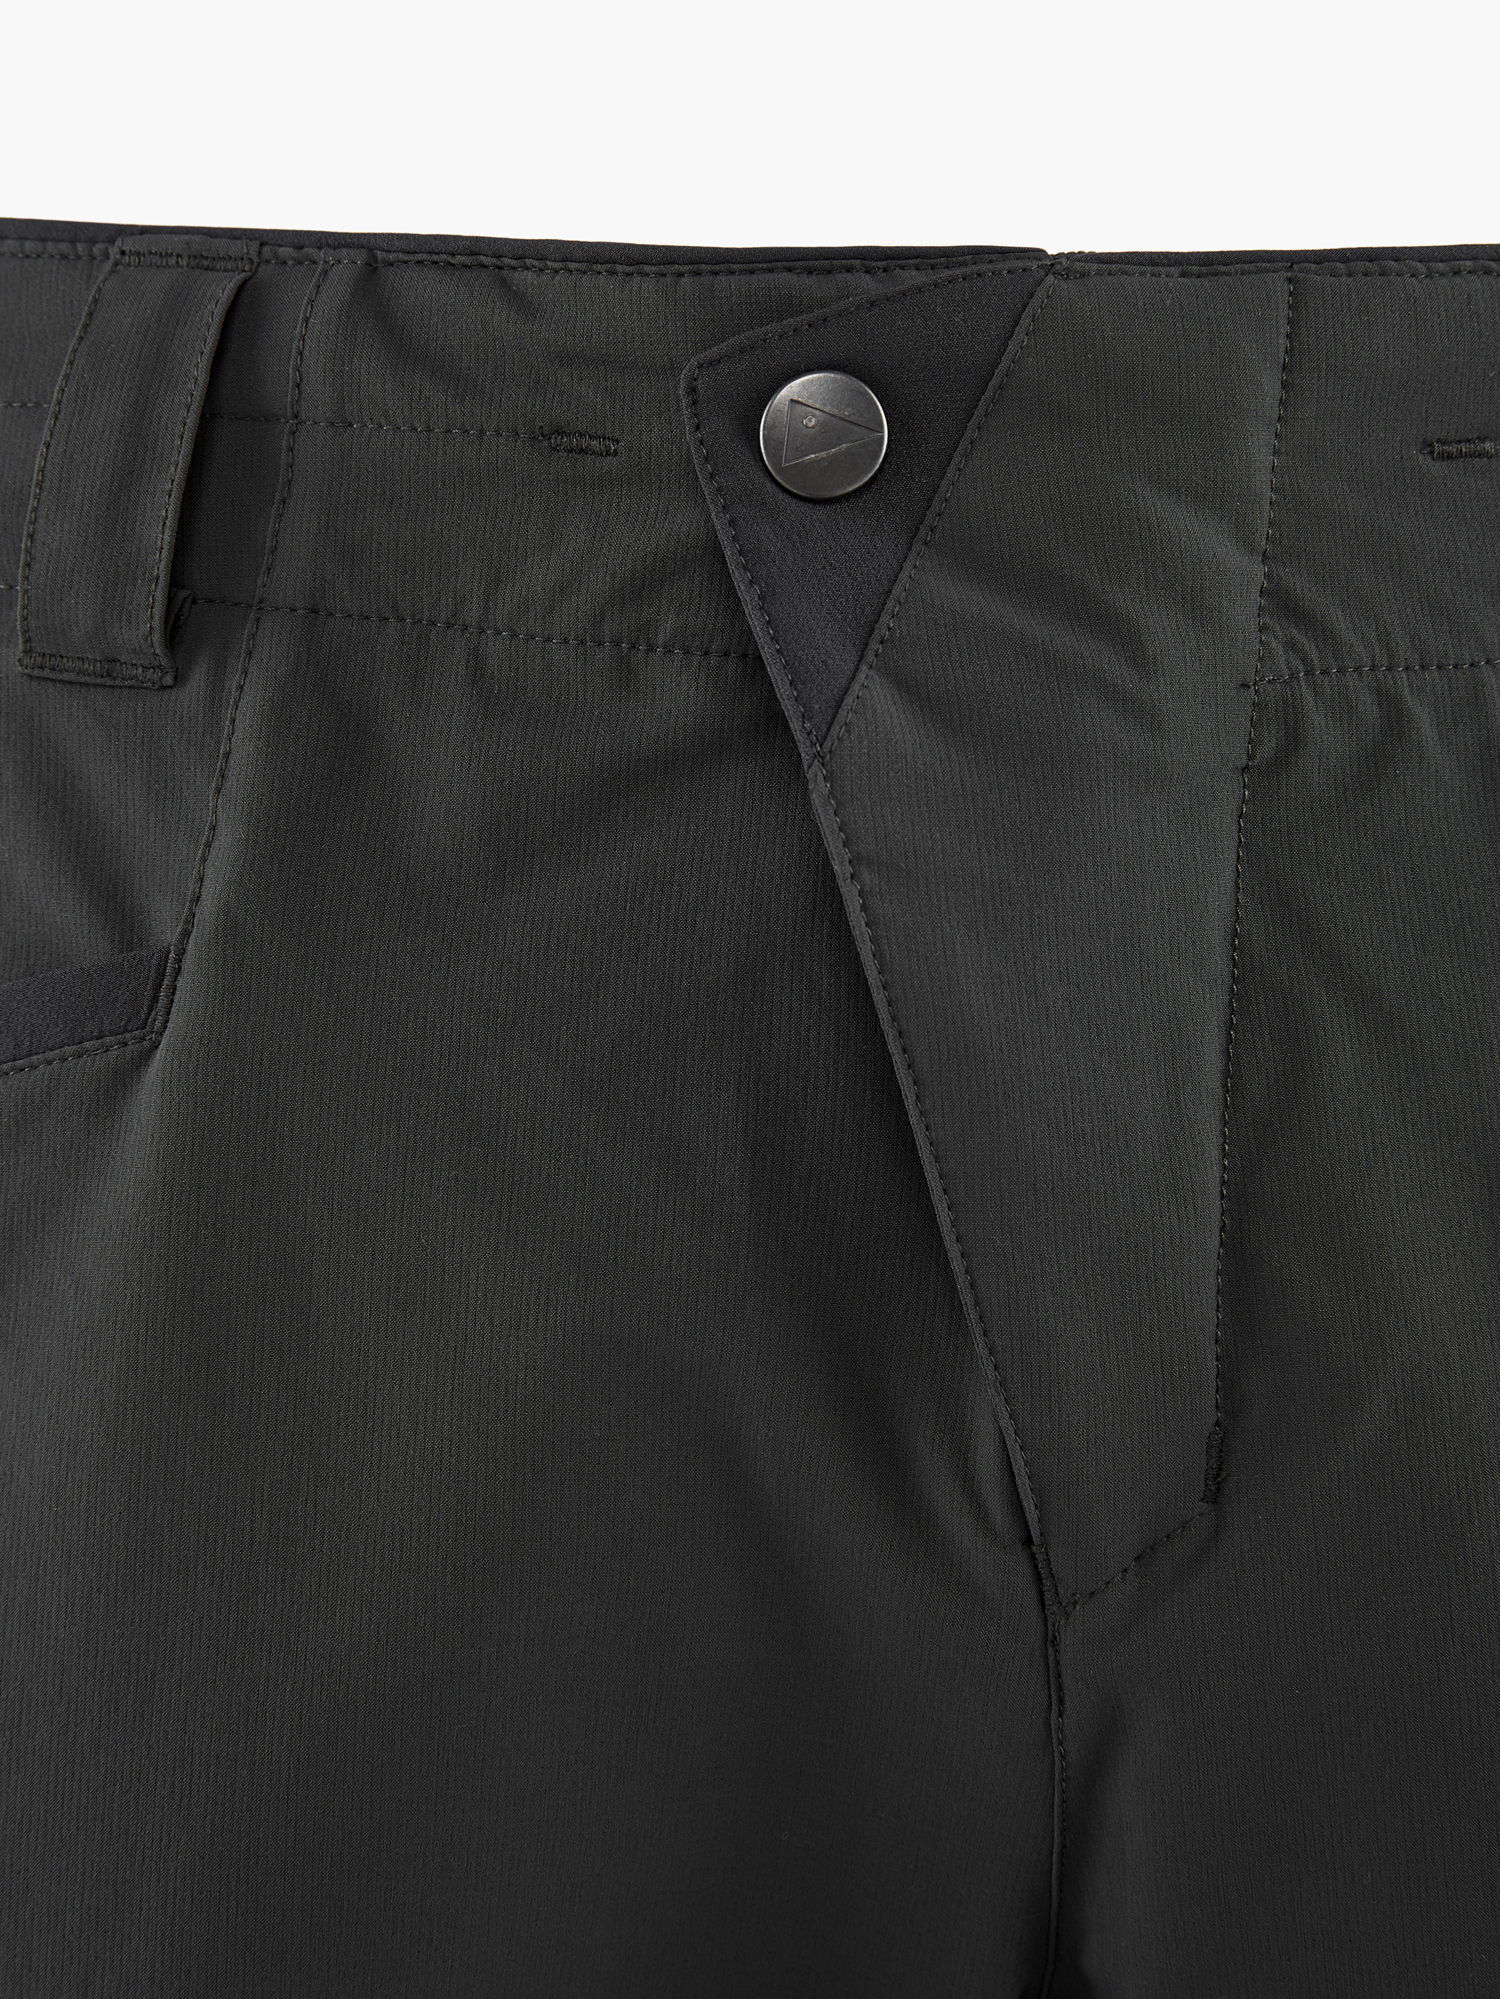 15570M91 - Vanadis 2.0 Shorts M's - Dark Grey